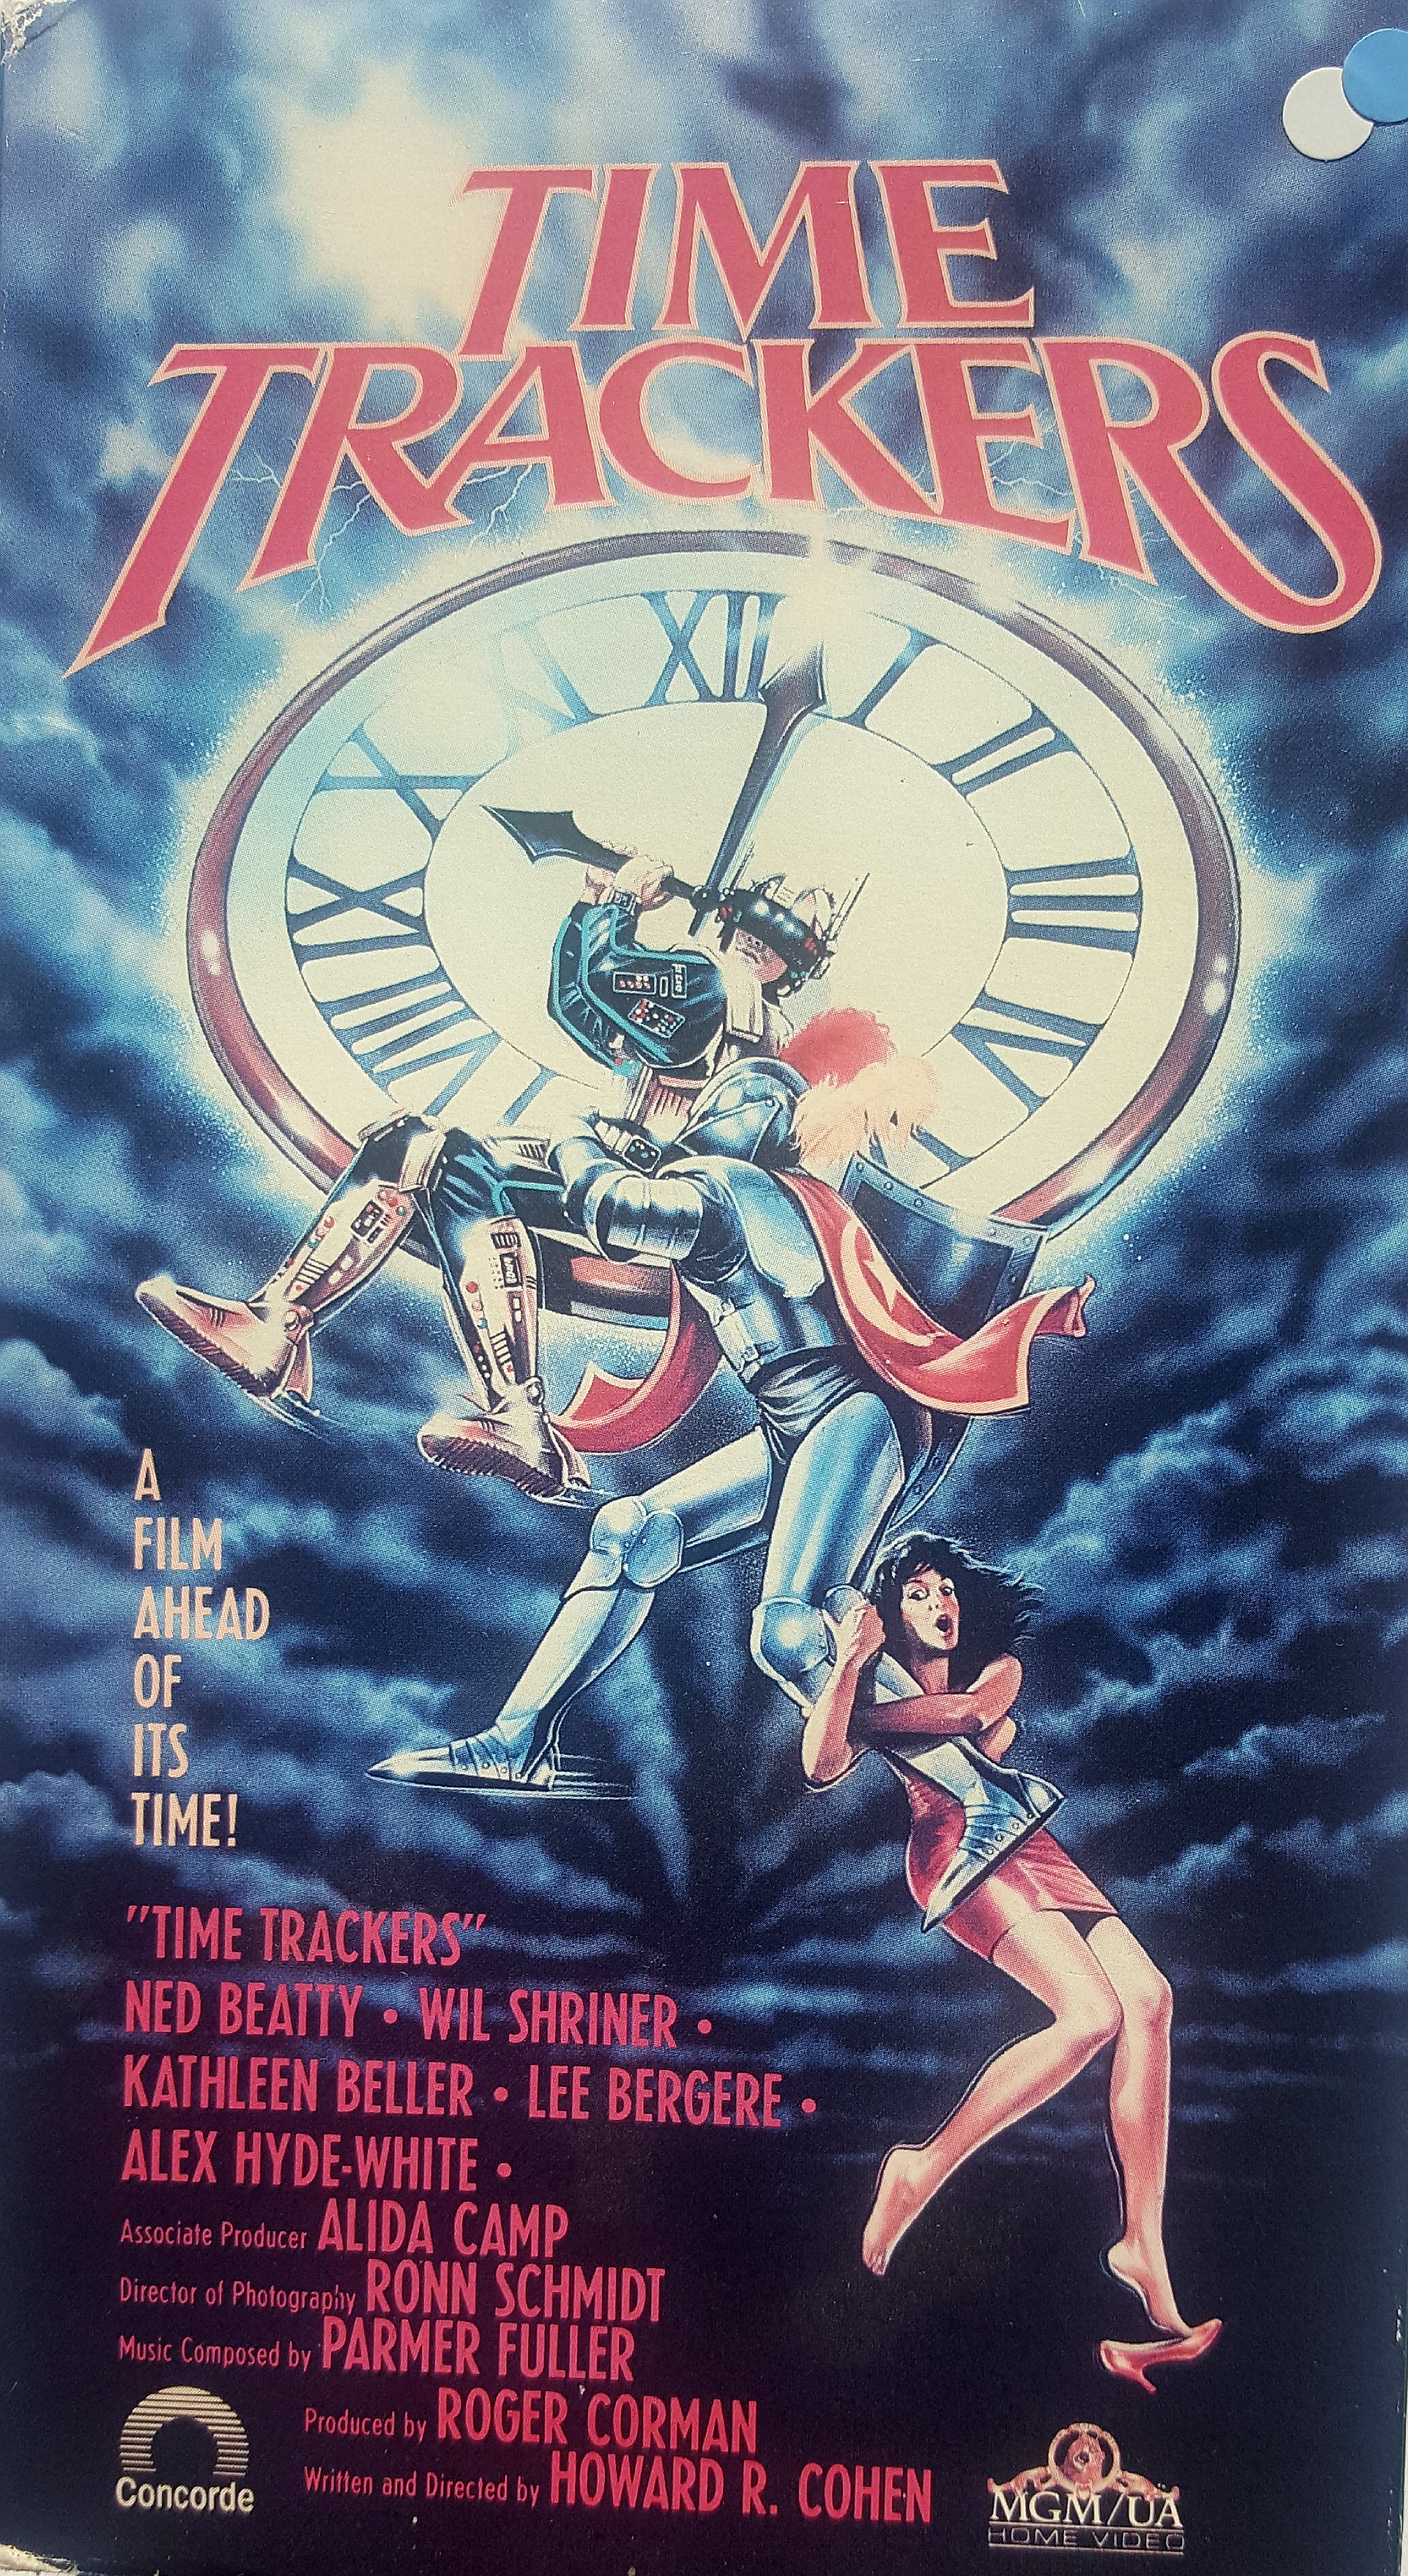 Time Trackers (1989) Screenshot 2 